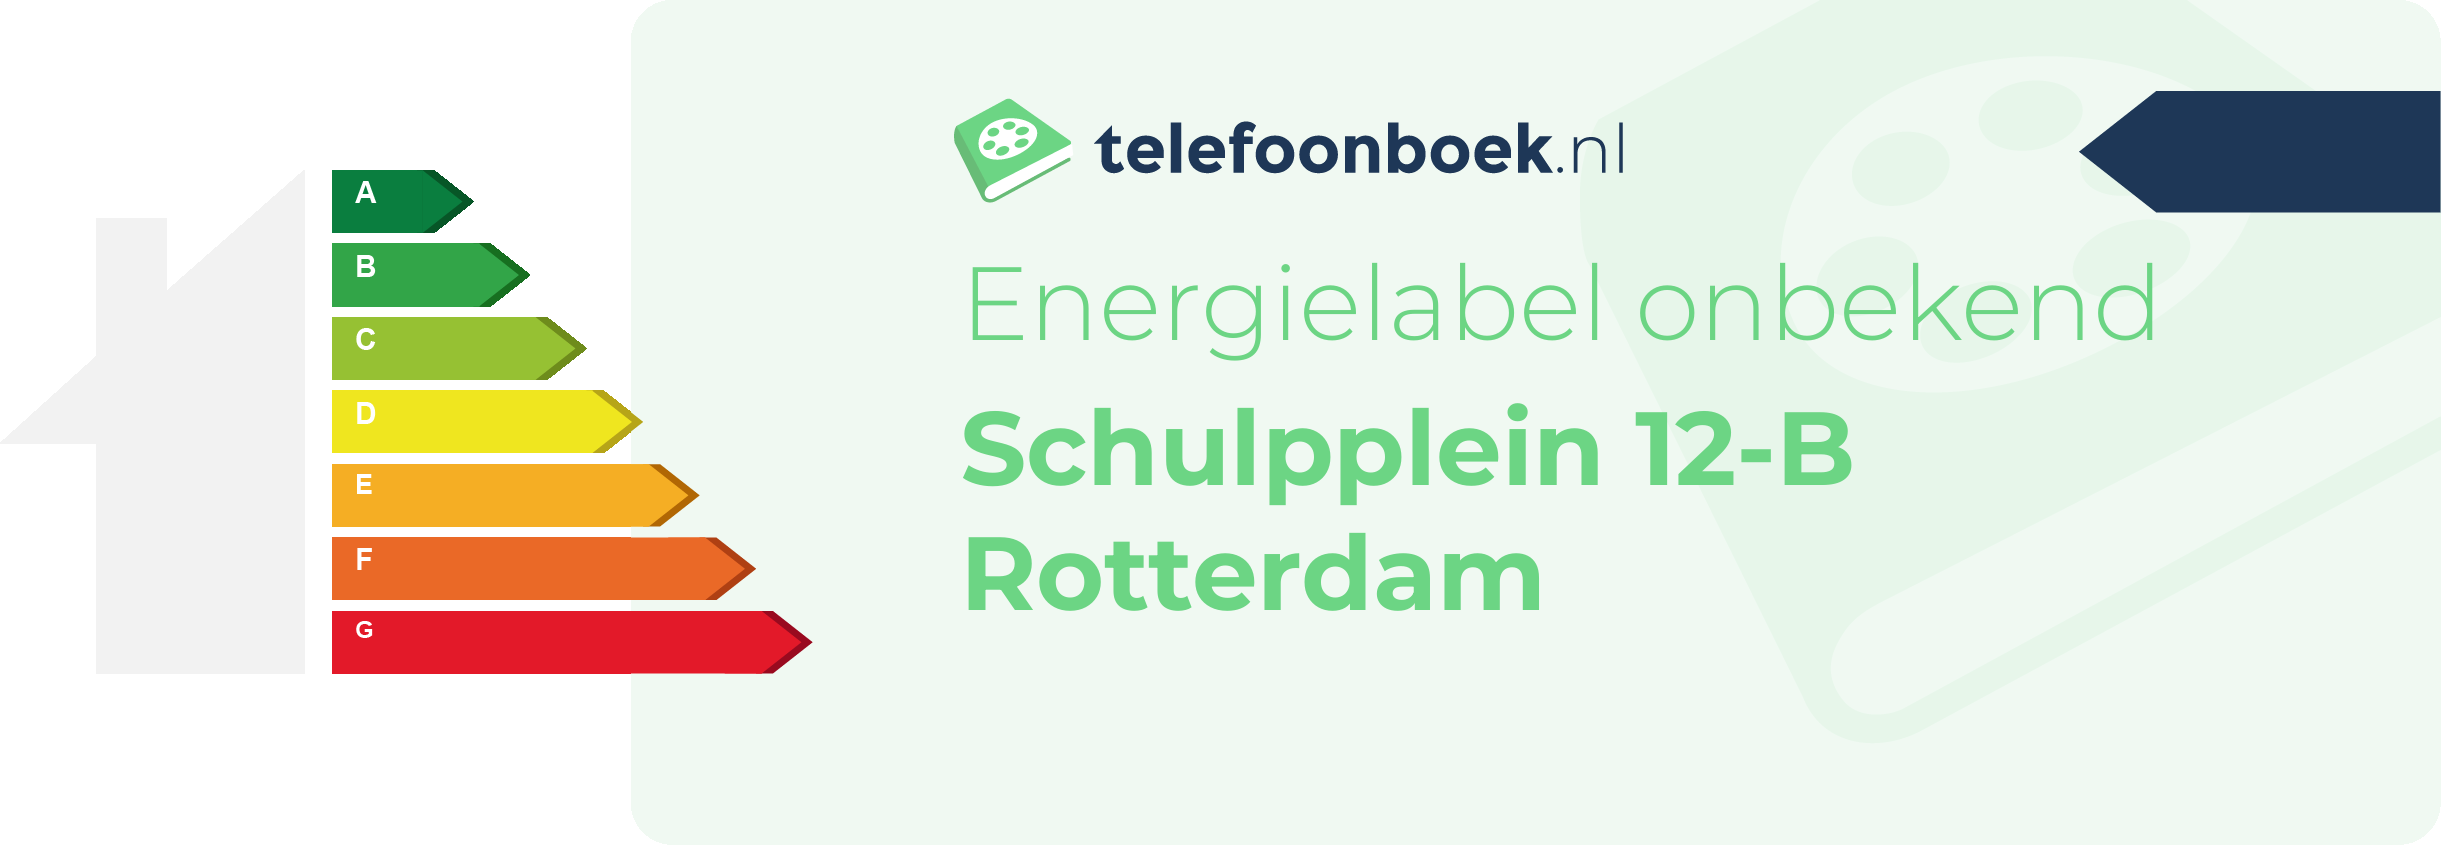 Energielabel Schulpplein 12-B Rotterdam